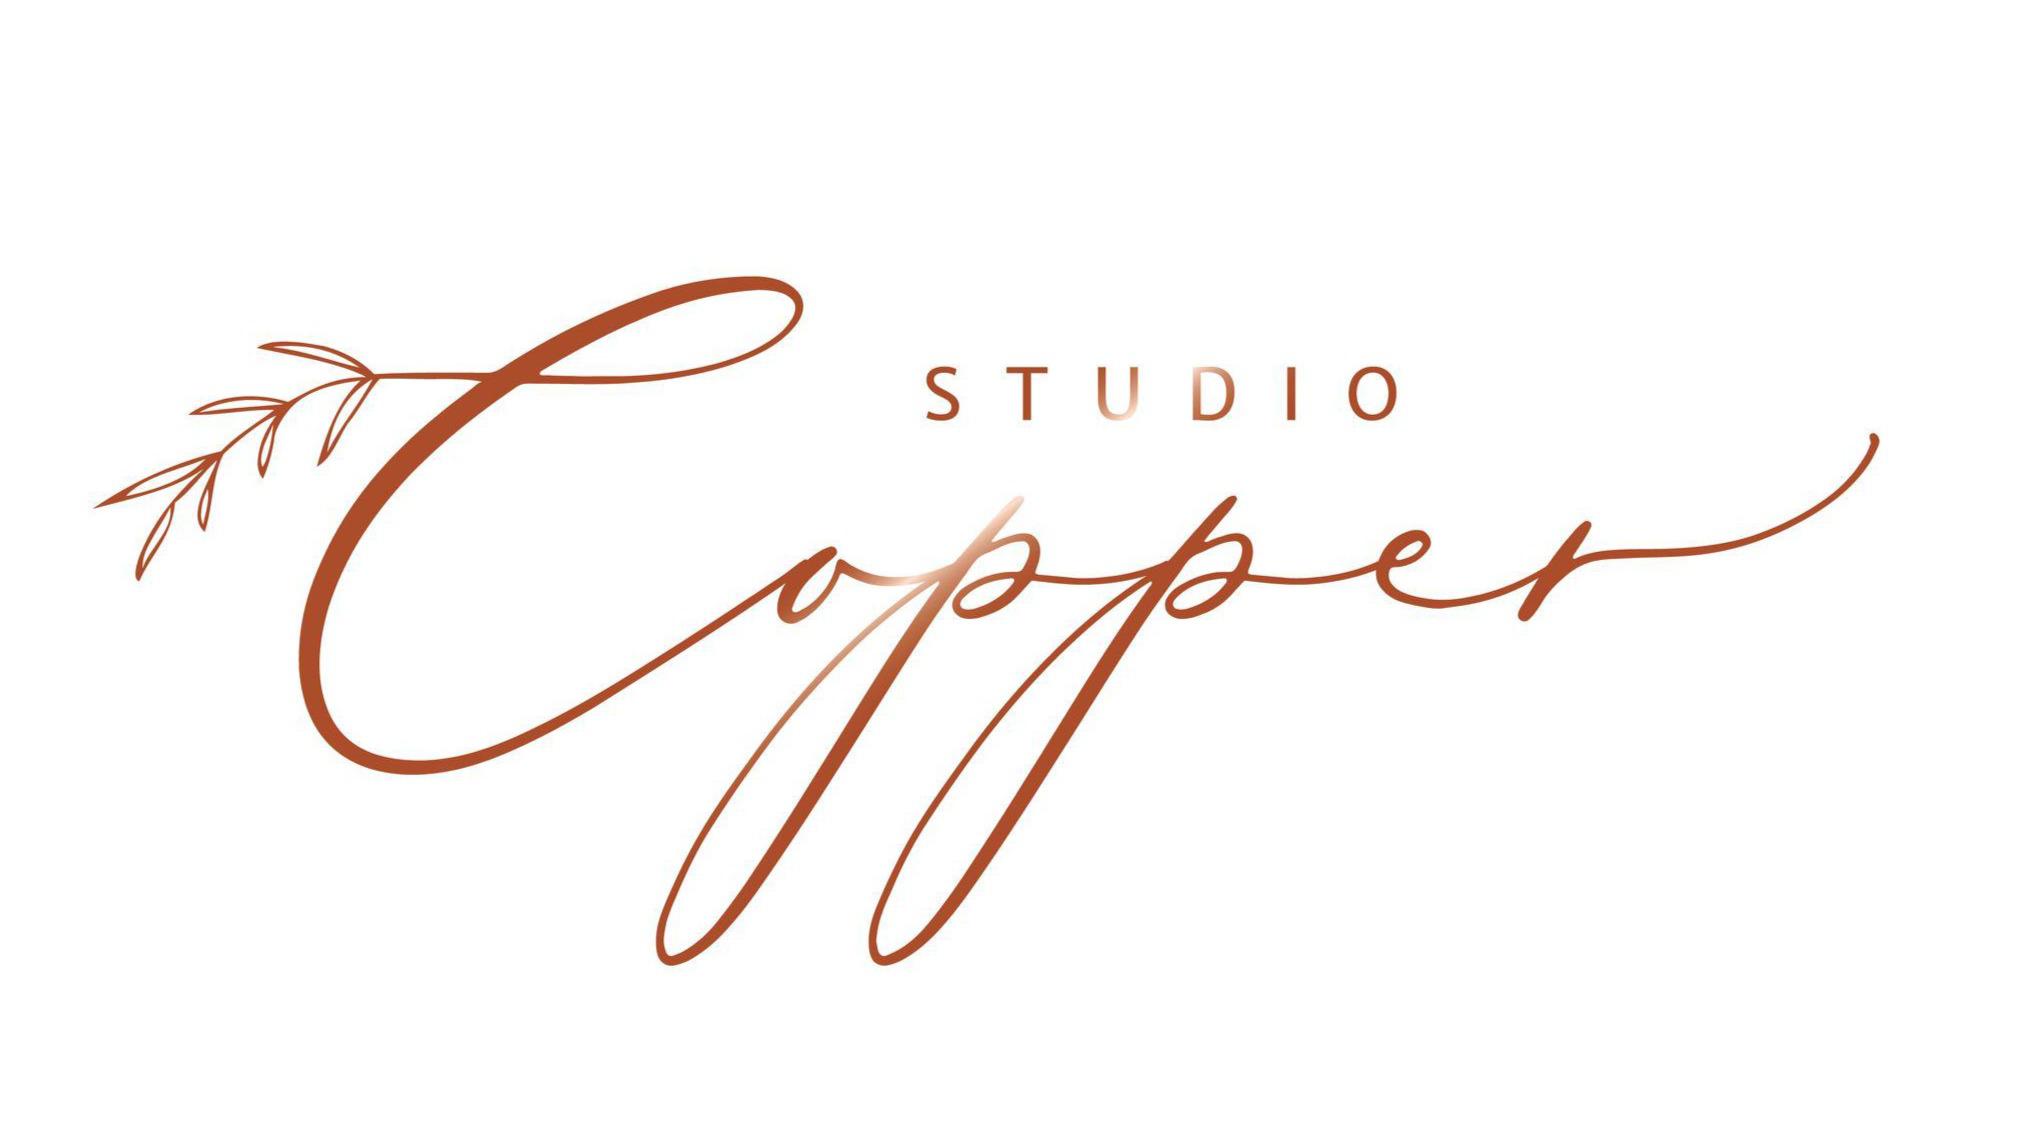 Images Studio Copper